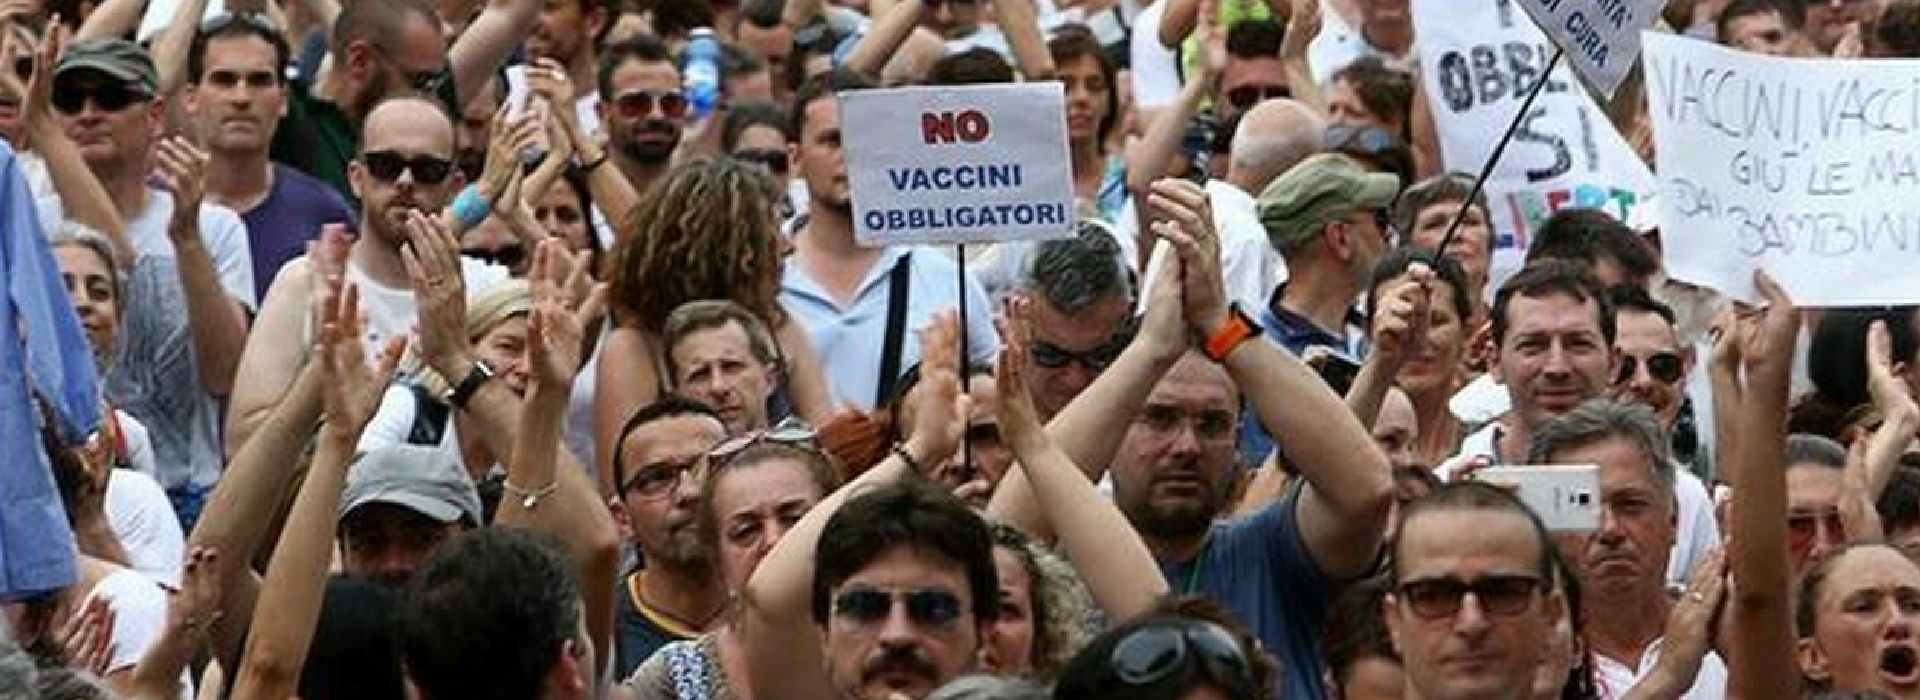 Dall'Abruzzo al Friuli per partecipare a manifestazione No-vax: medico positivo